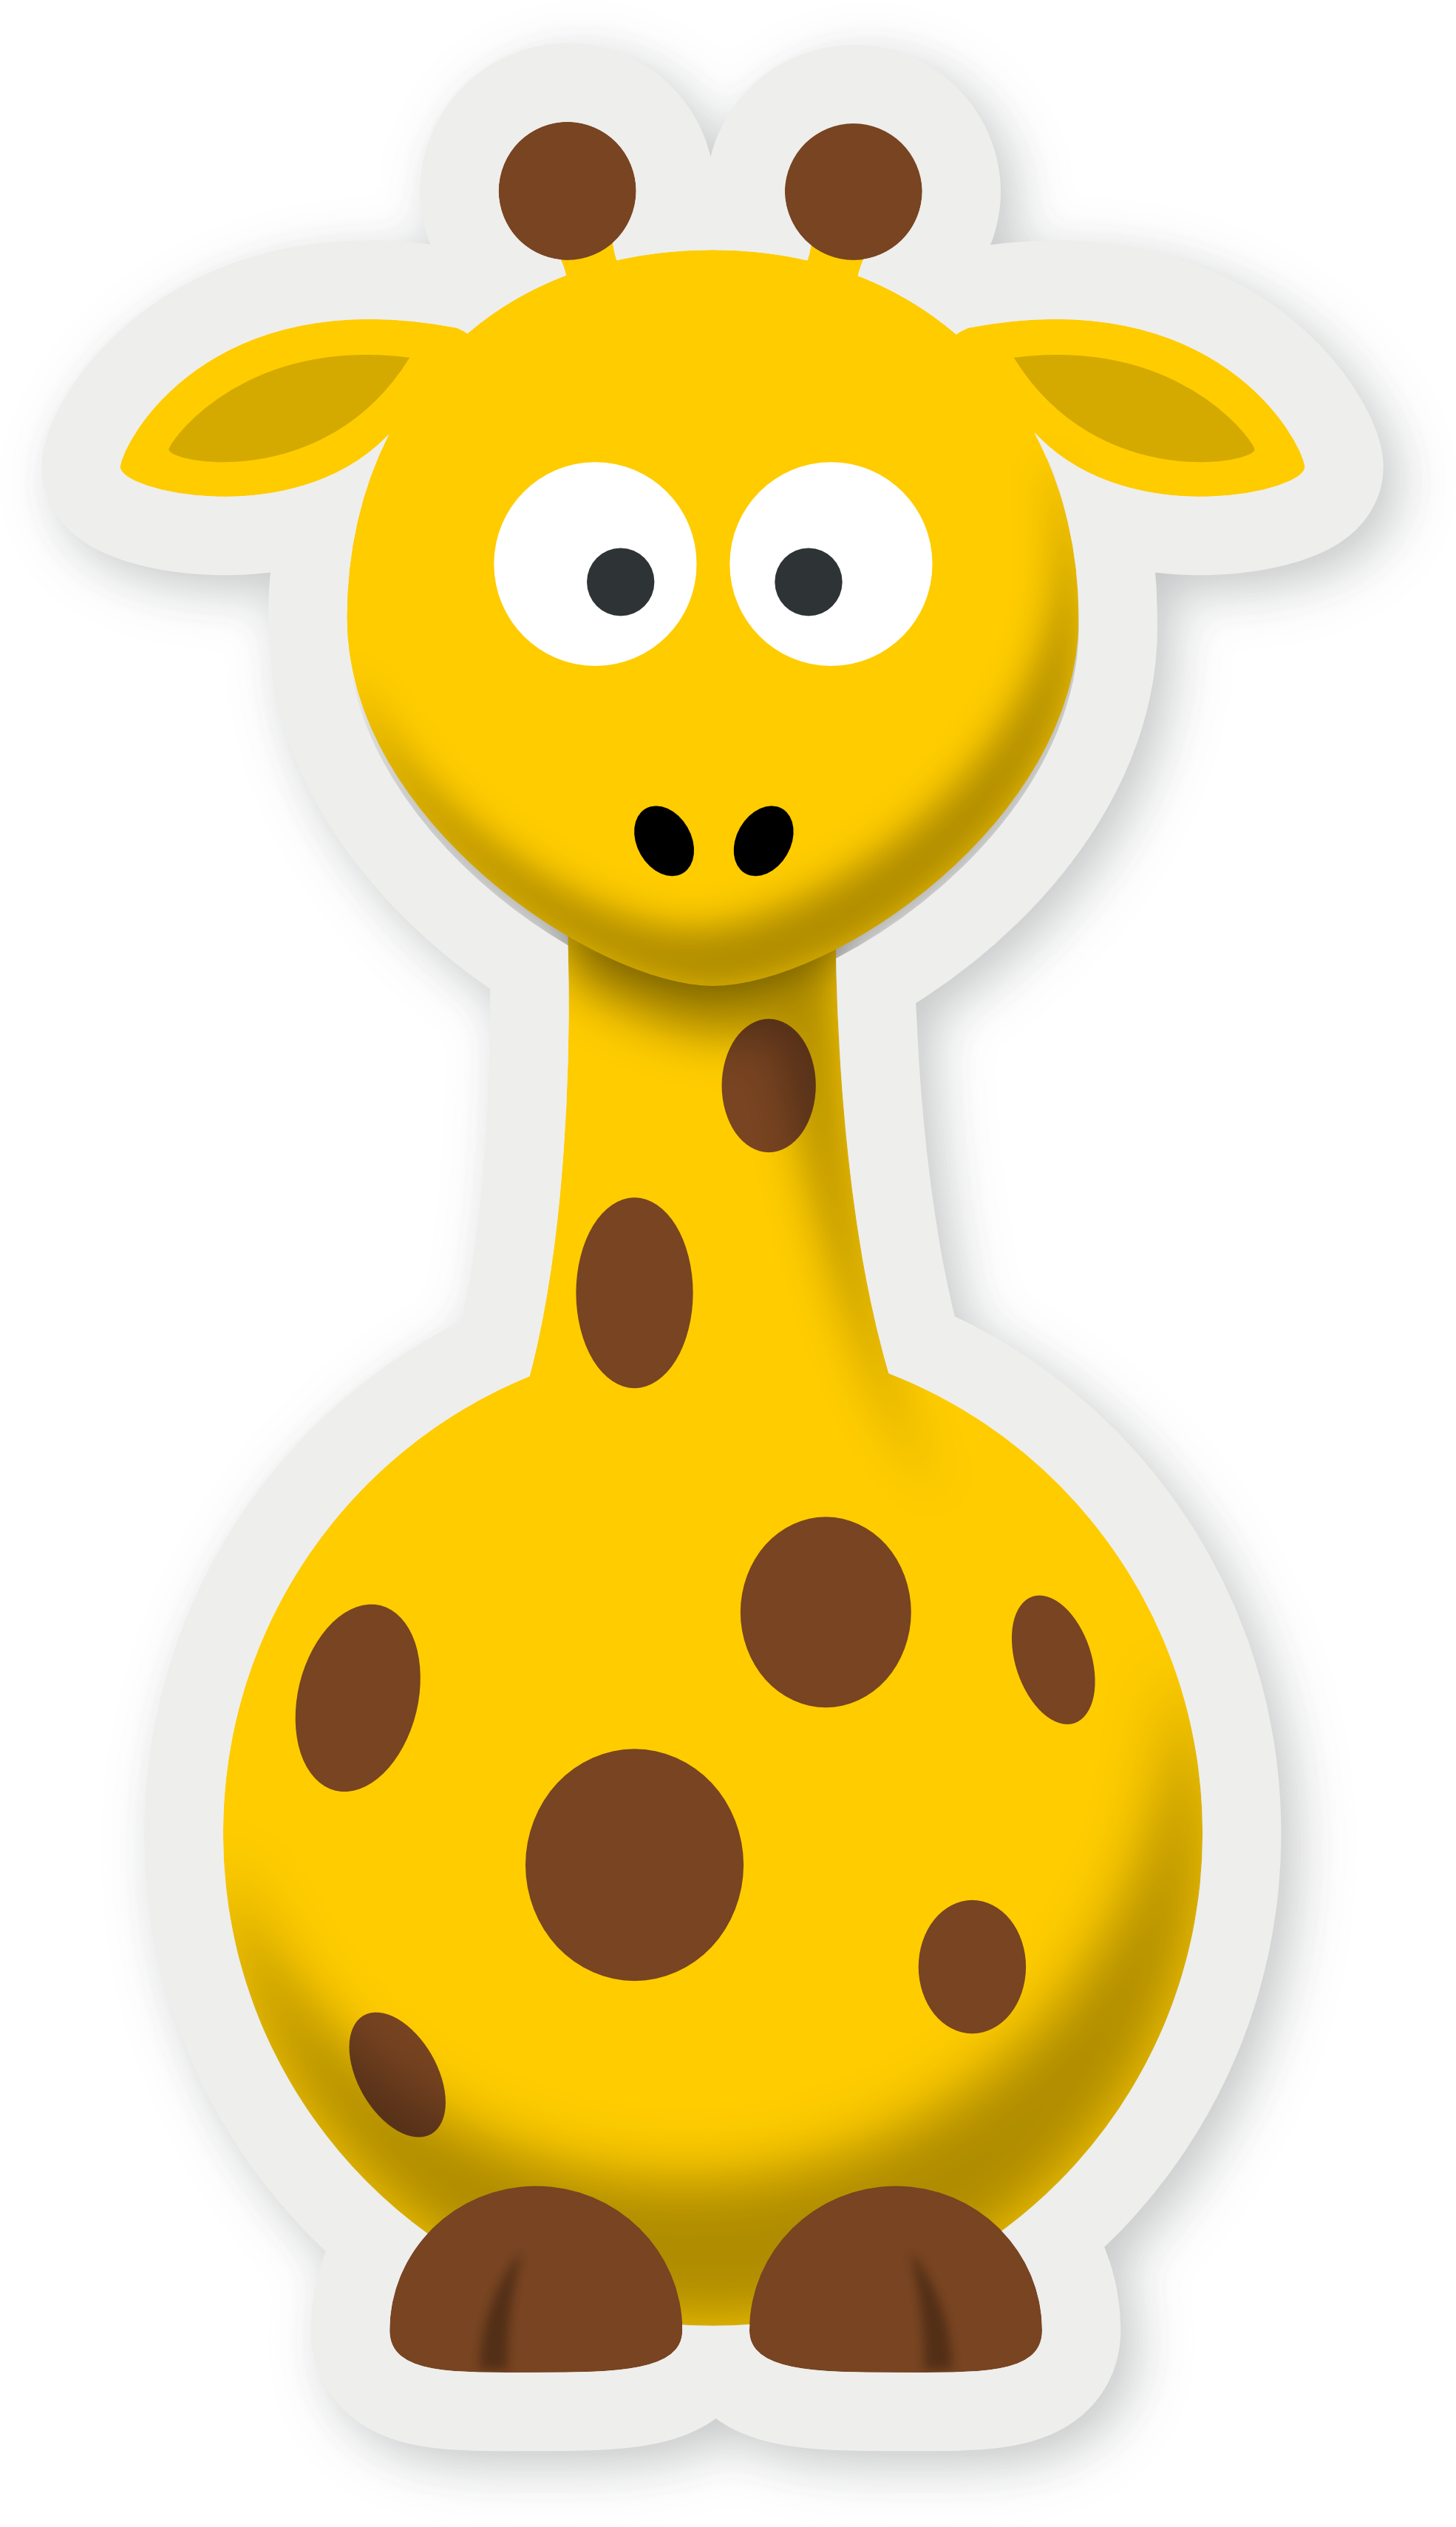 Pics Of Cartoon Giraffes Giraffe Cartoon Without Background - Clip Art ...